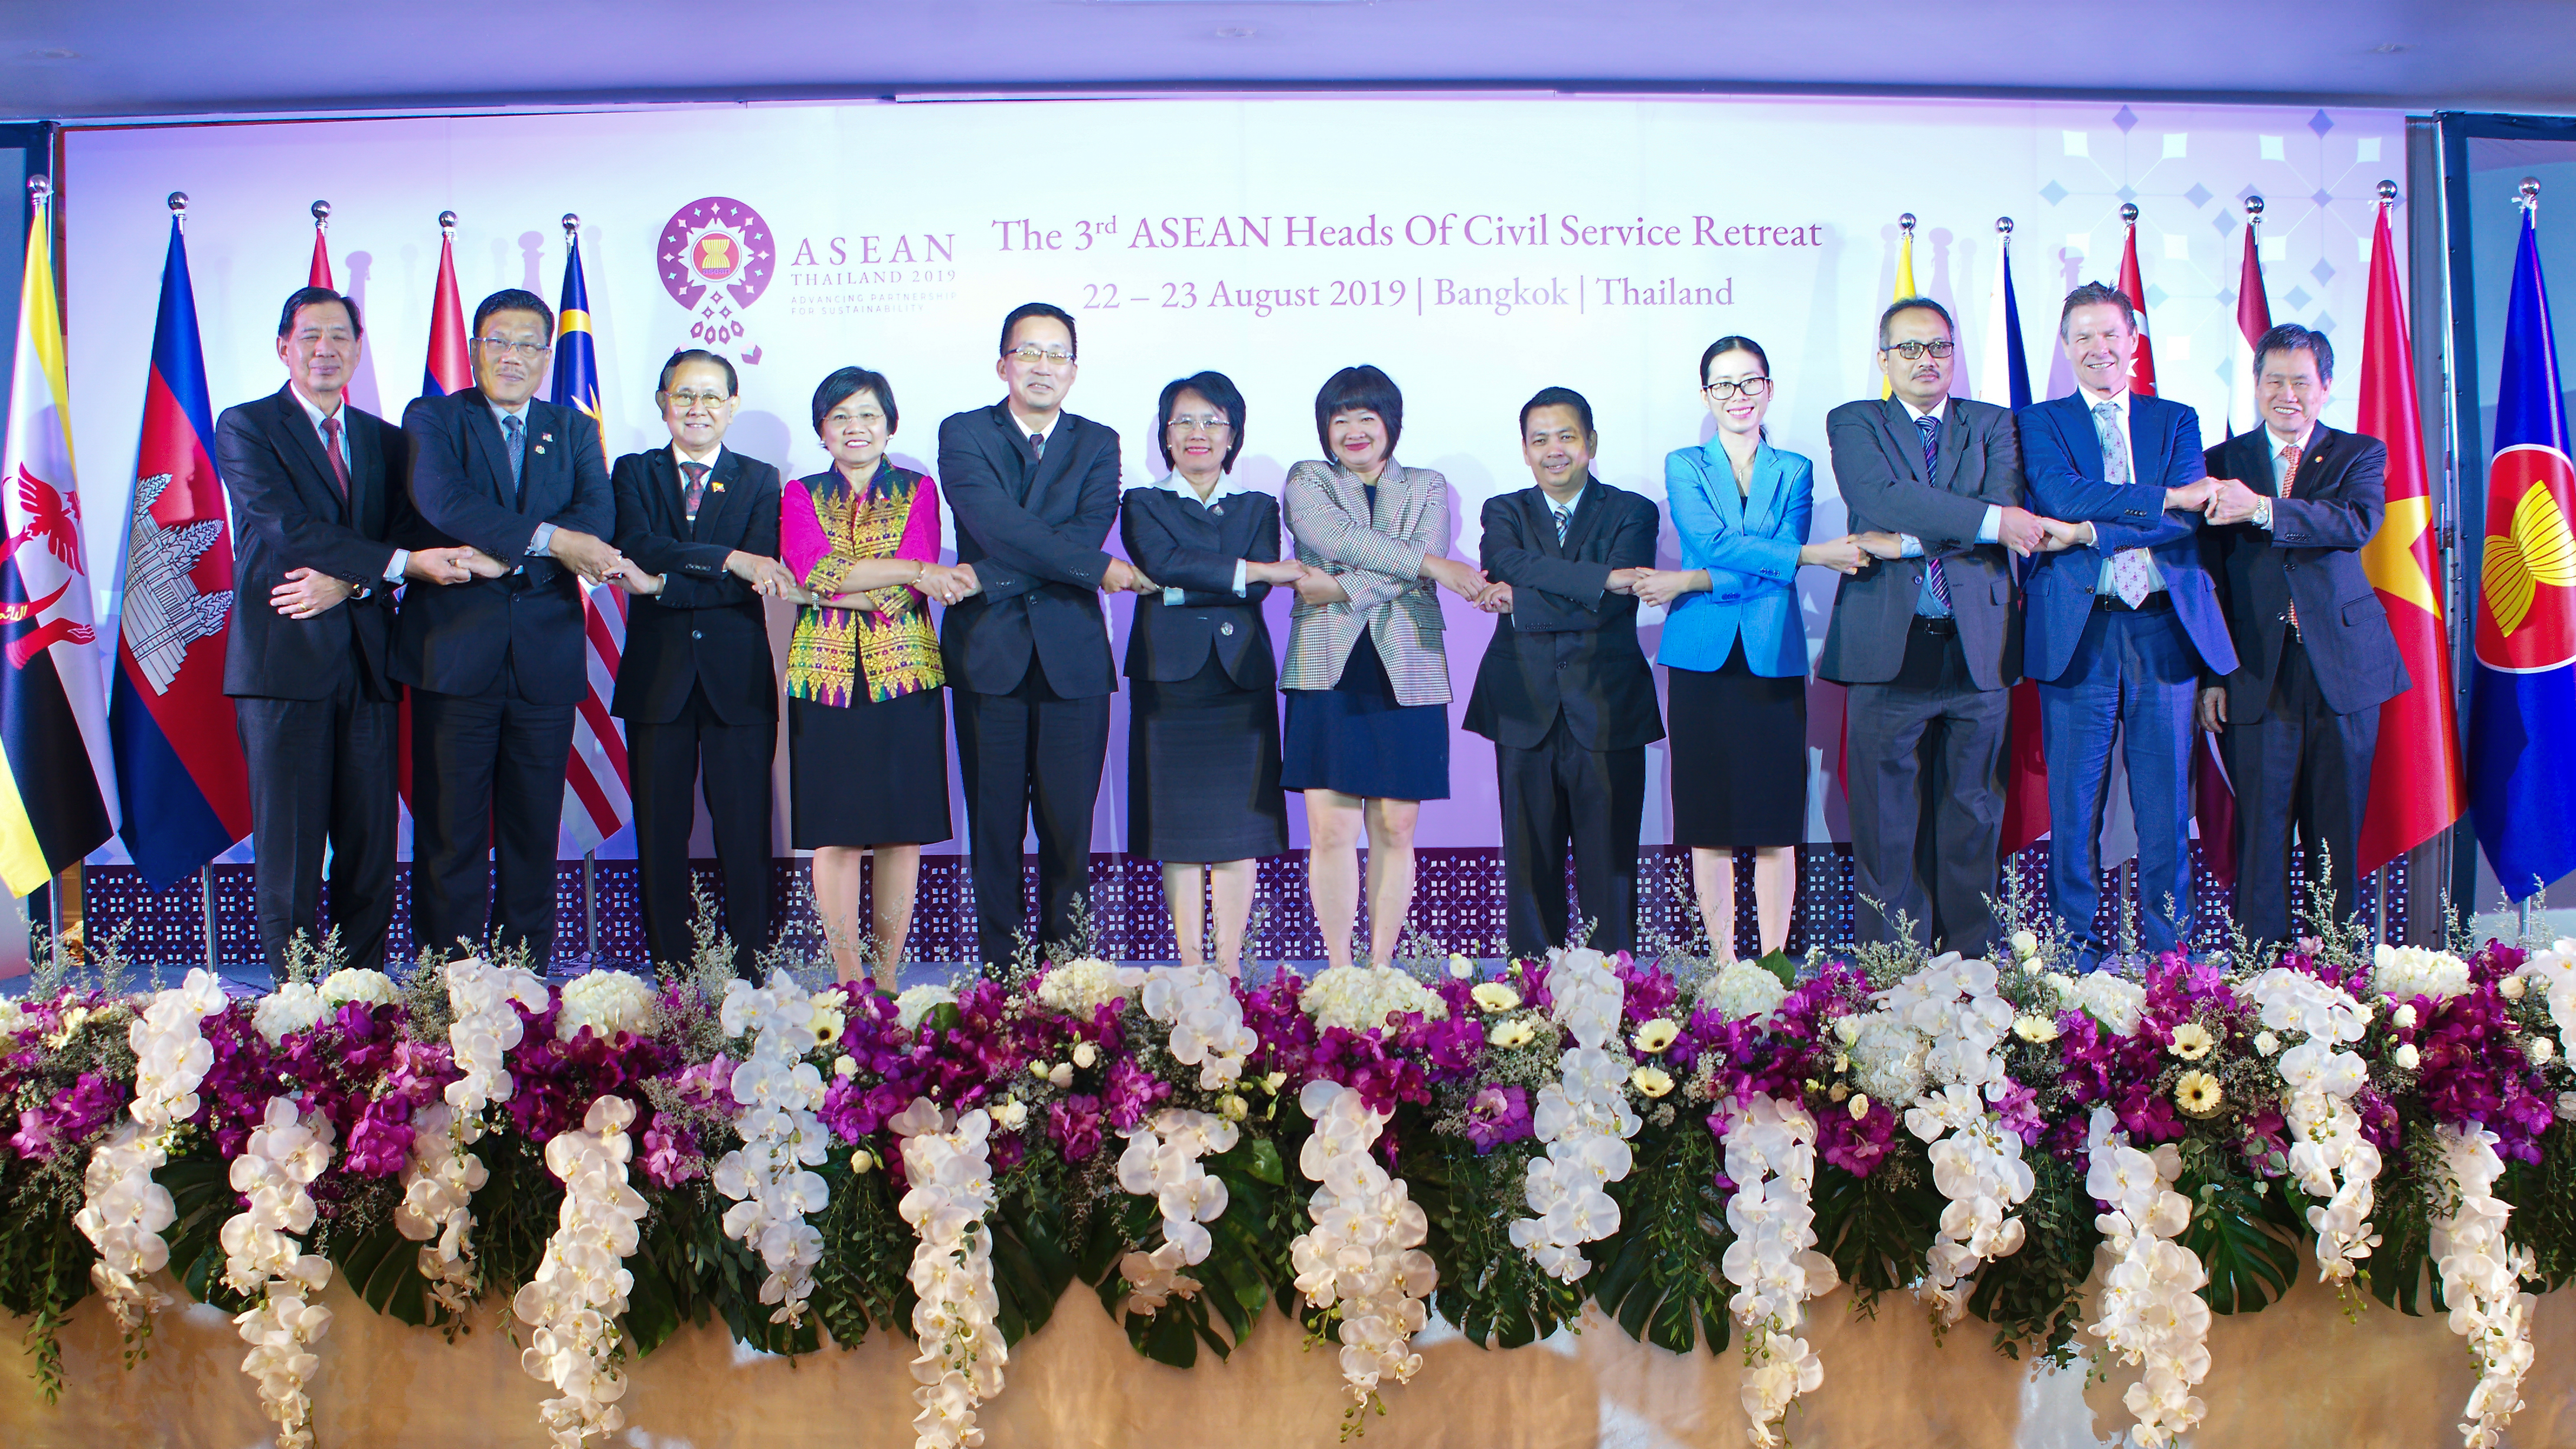 การประชุมผู้นำภาคราชการพลเรือนอาเซียนอย่างไม่เป็นทางการ ครั้งที่ ๓ (The 3rd ASEAN Heads of Civil Service Retreat)